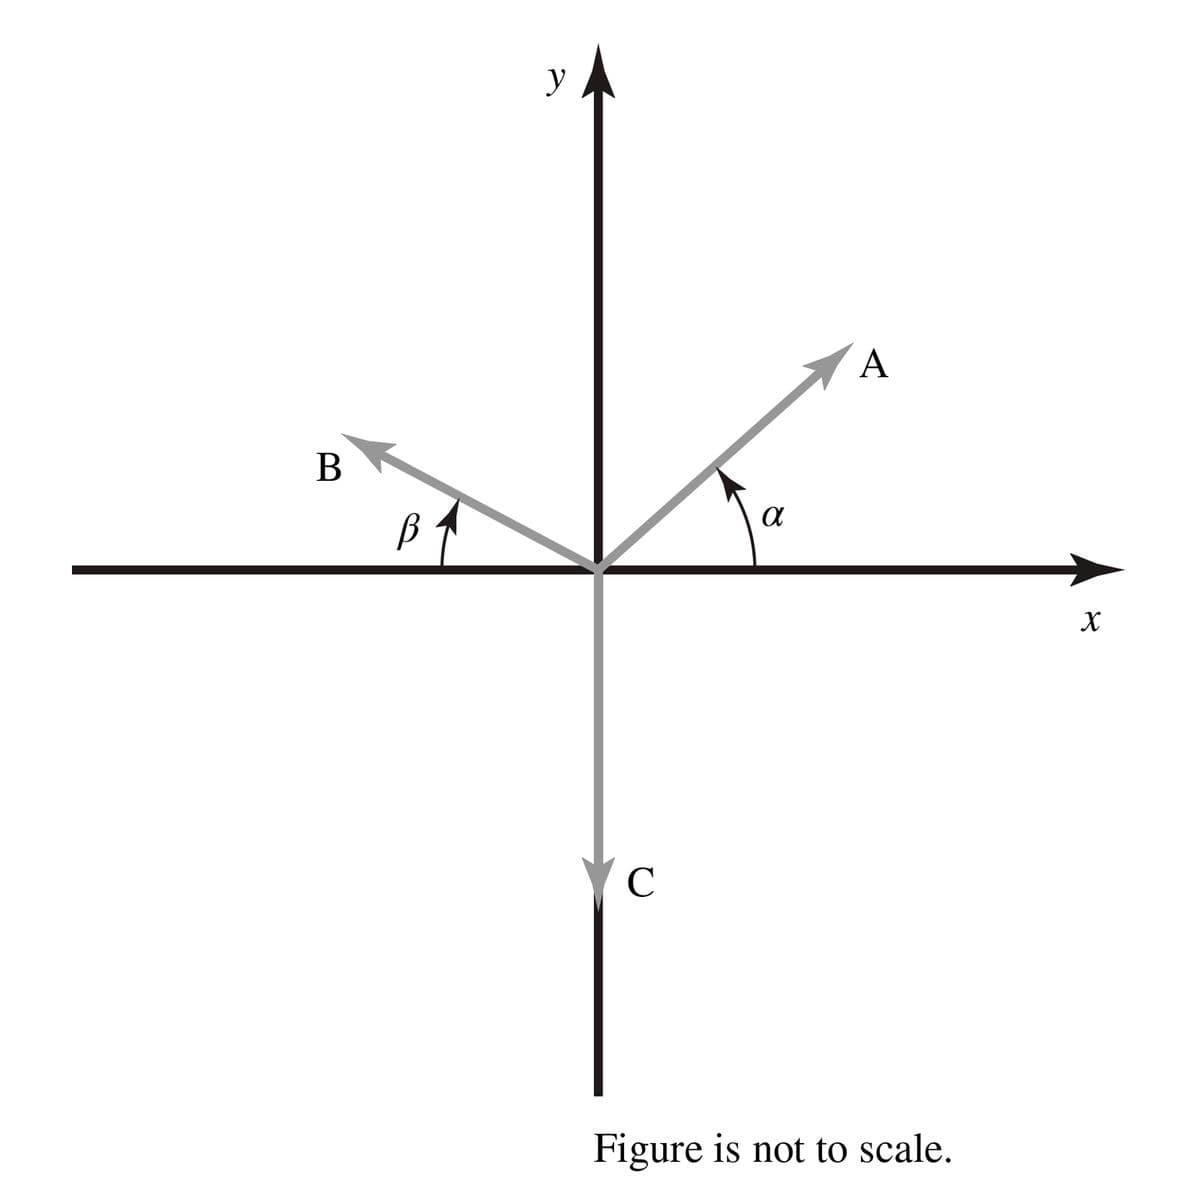 B
В
y
с
α
A
Figure is not to scale.
X